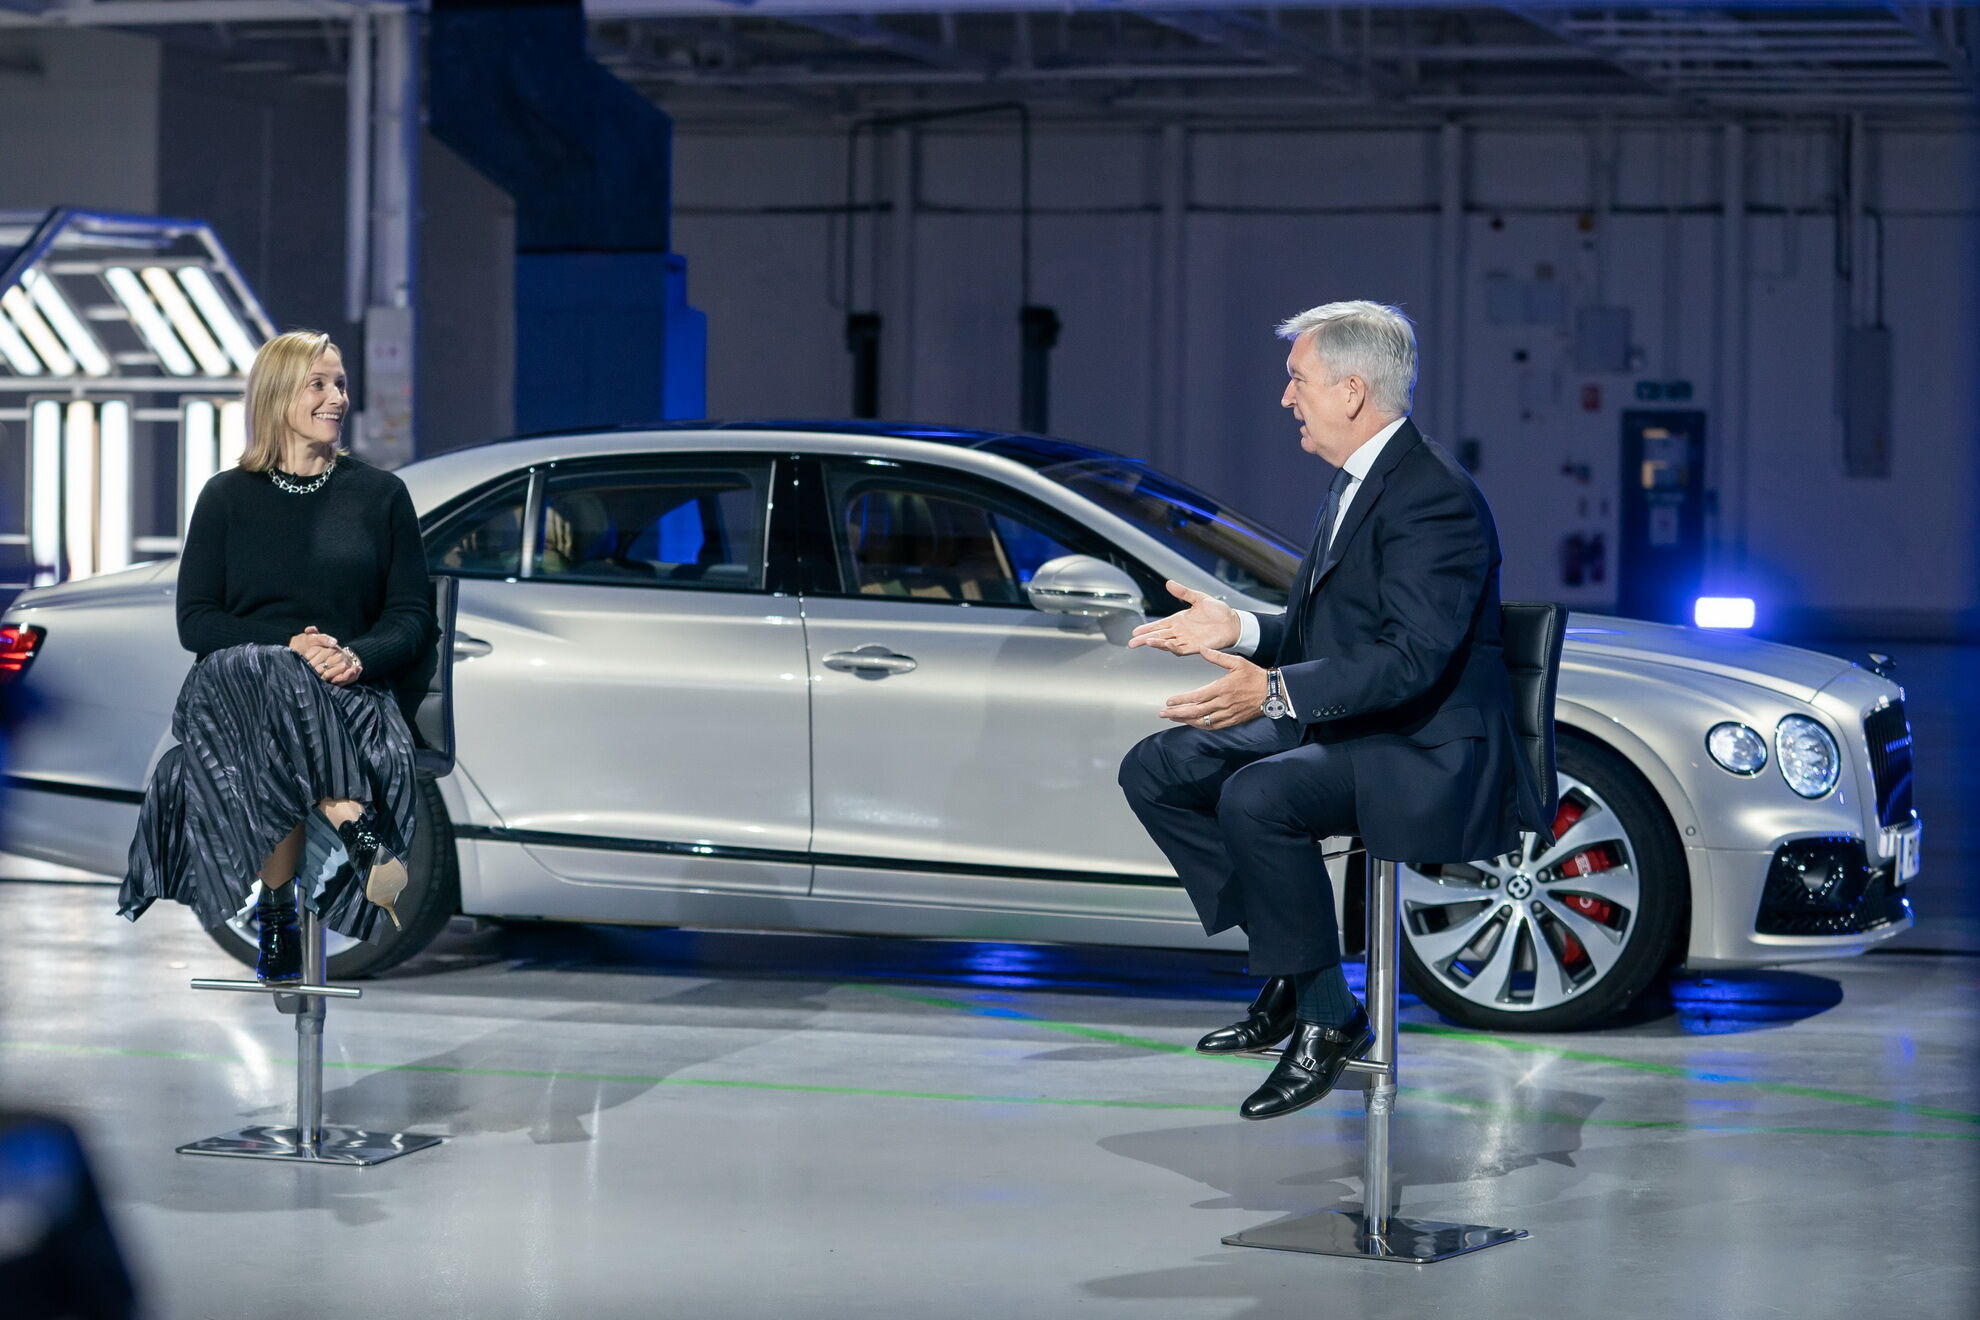 Керівник Bentley Едріан Холлмарк пообіцяв, що до 2026 року всі моделі компанії будуть гібридами або повністю електричними